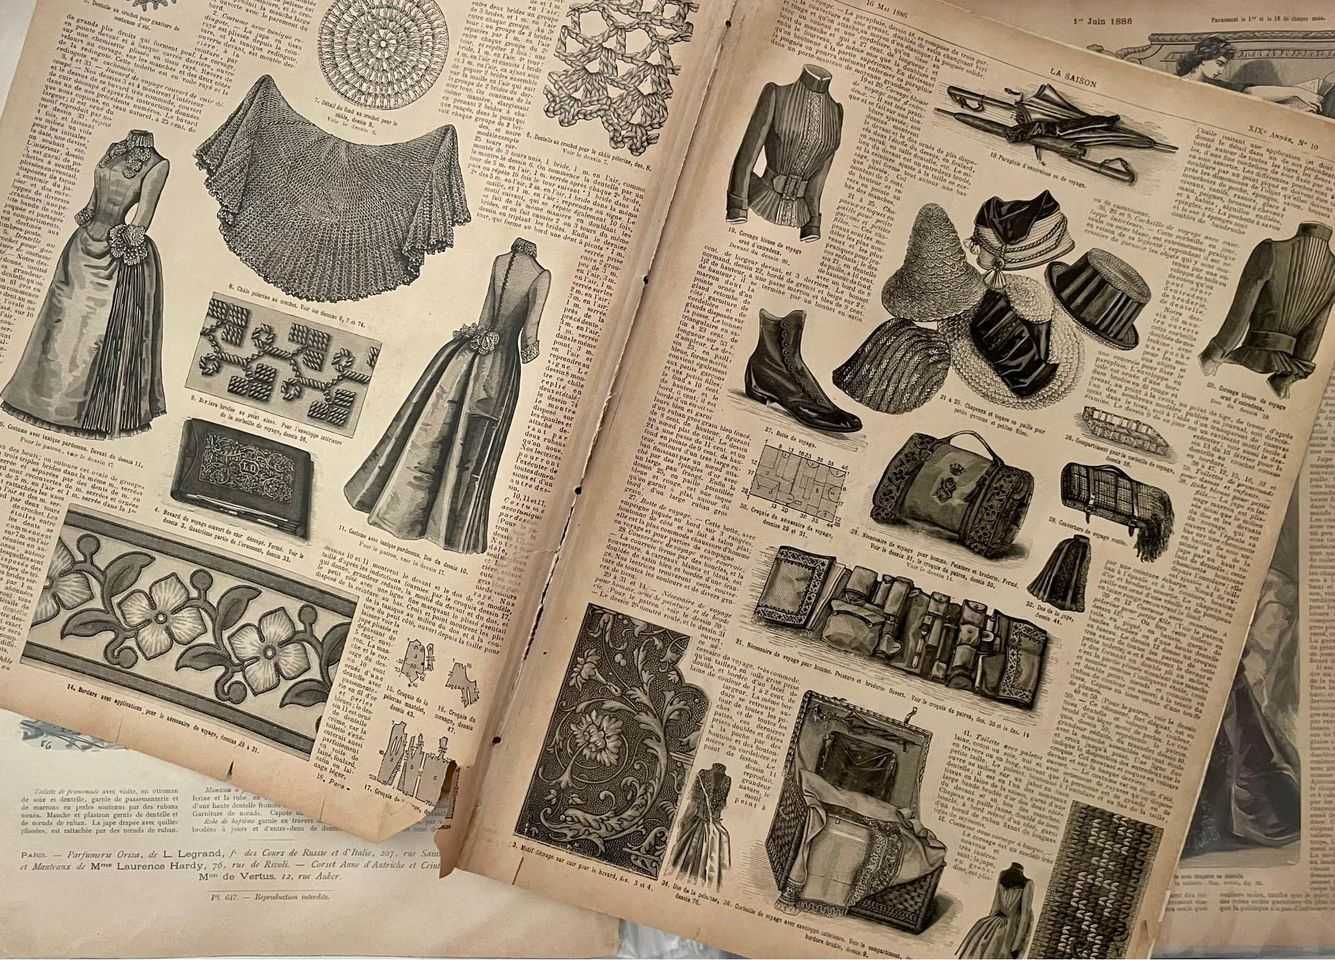 La saison, Journal illustré des Dames, 1885-86